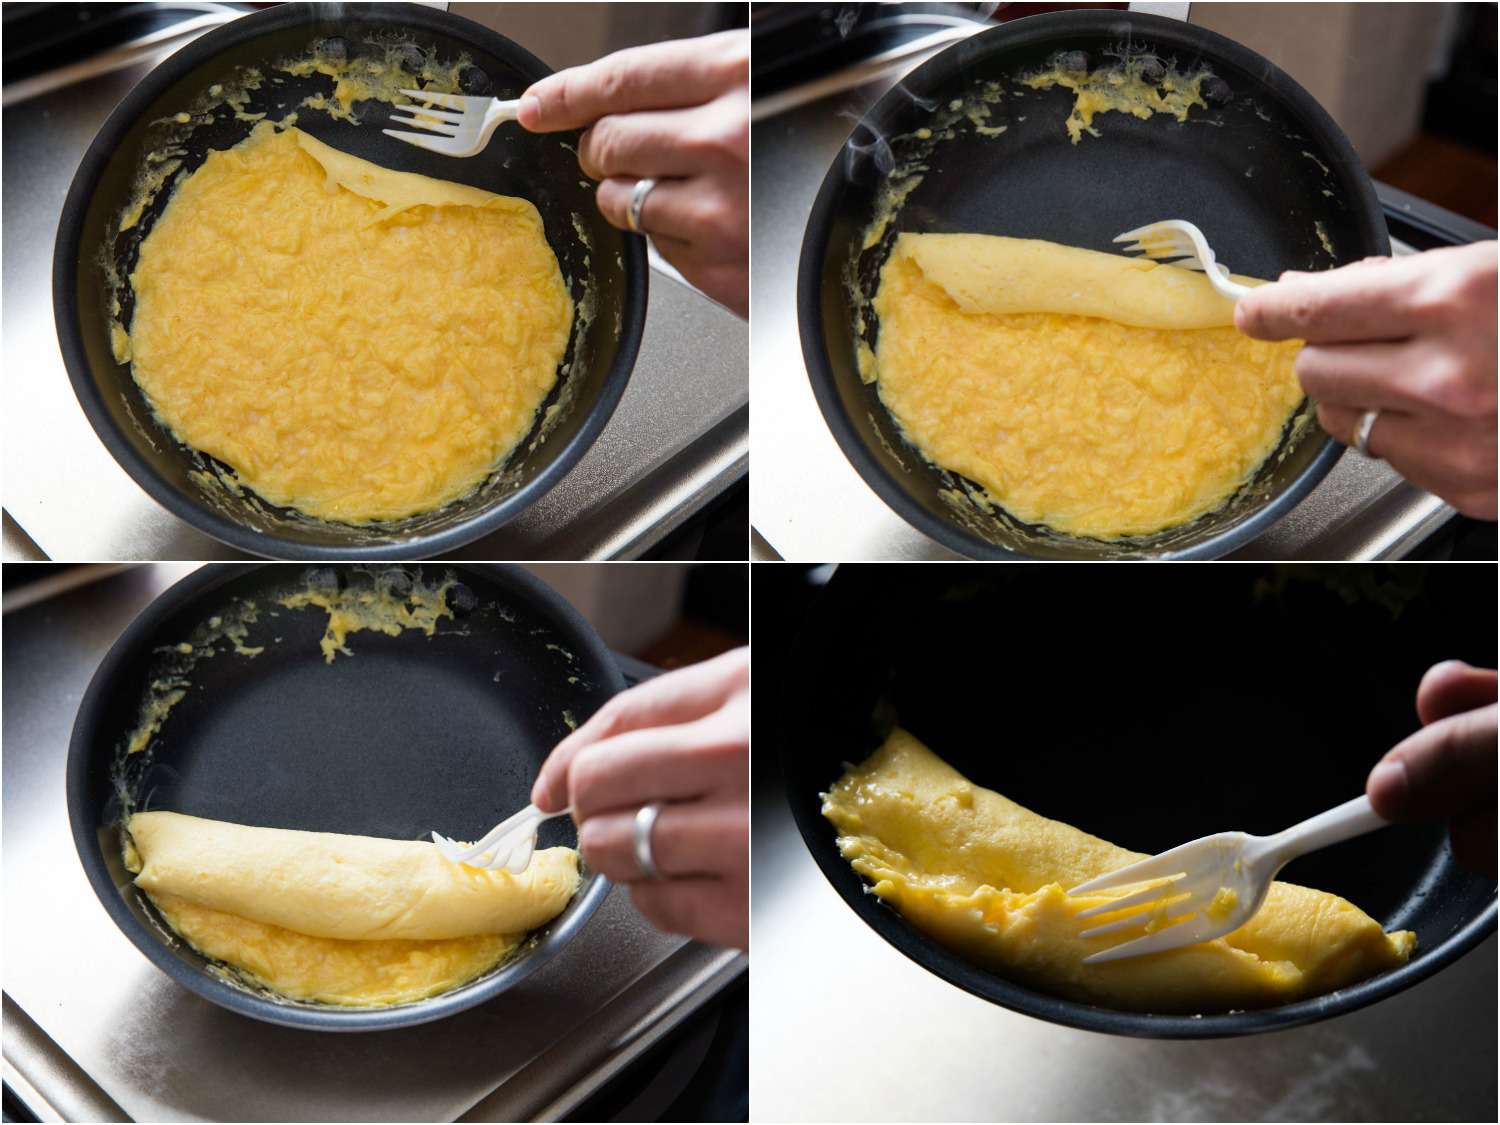 在不粘锅里做法式煎蛋卷的拼贴画:用塑料叉子把煎蛋卷的边缘卷起来，形成一个长方形。gydF4y2Ba